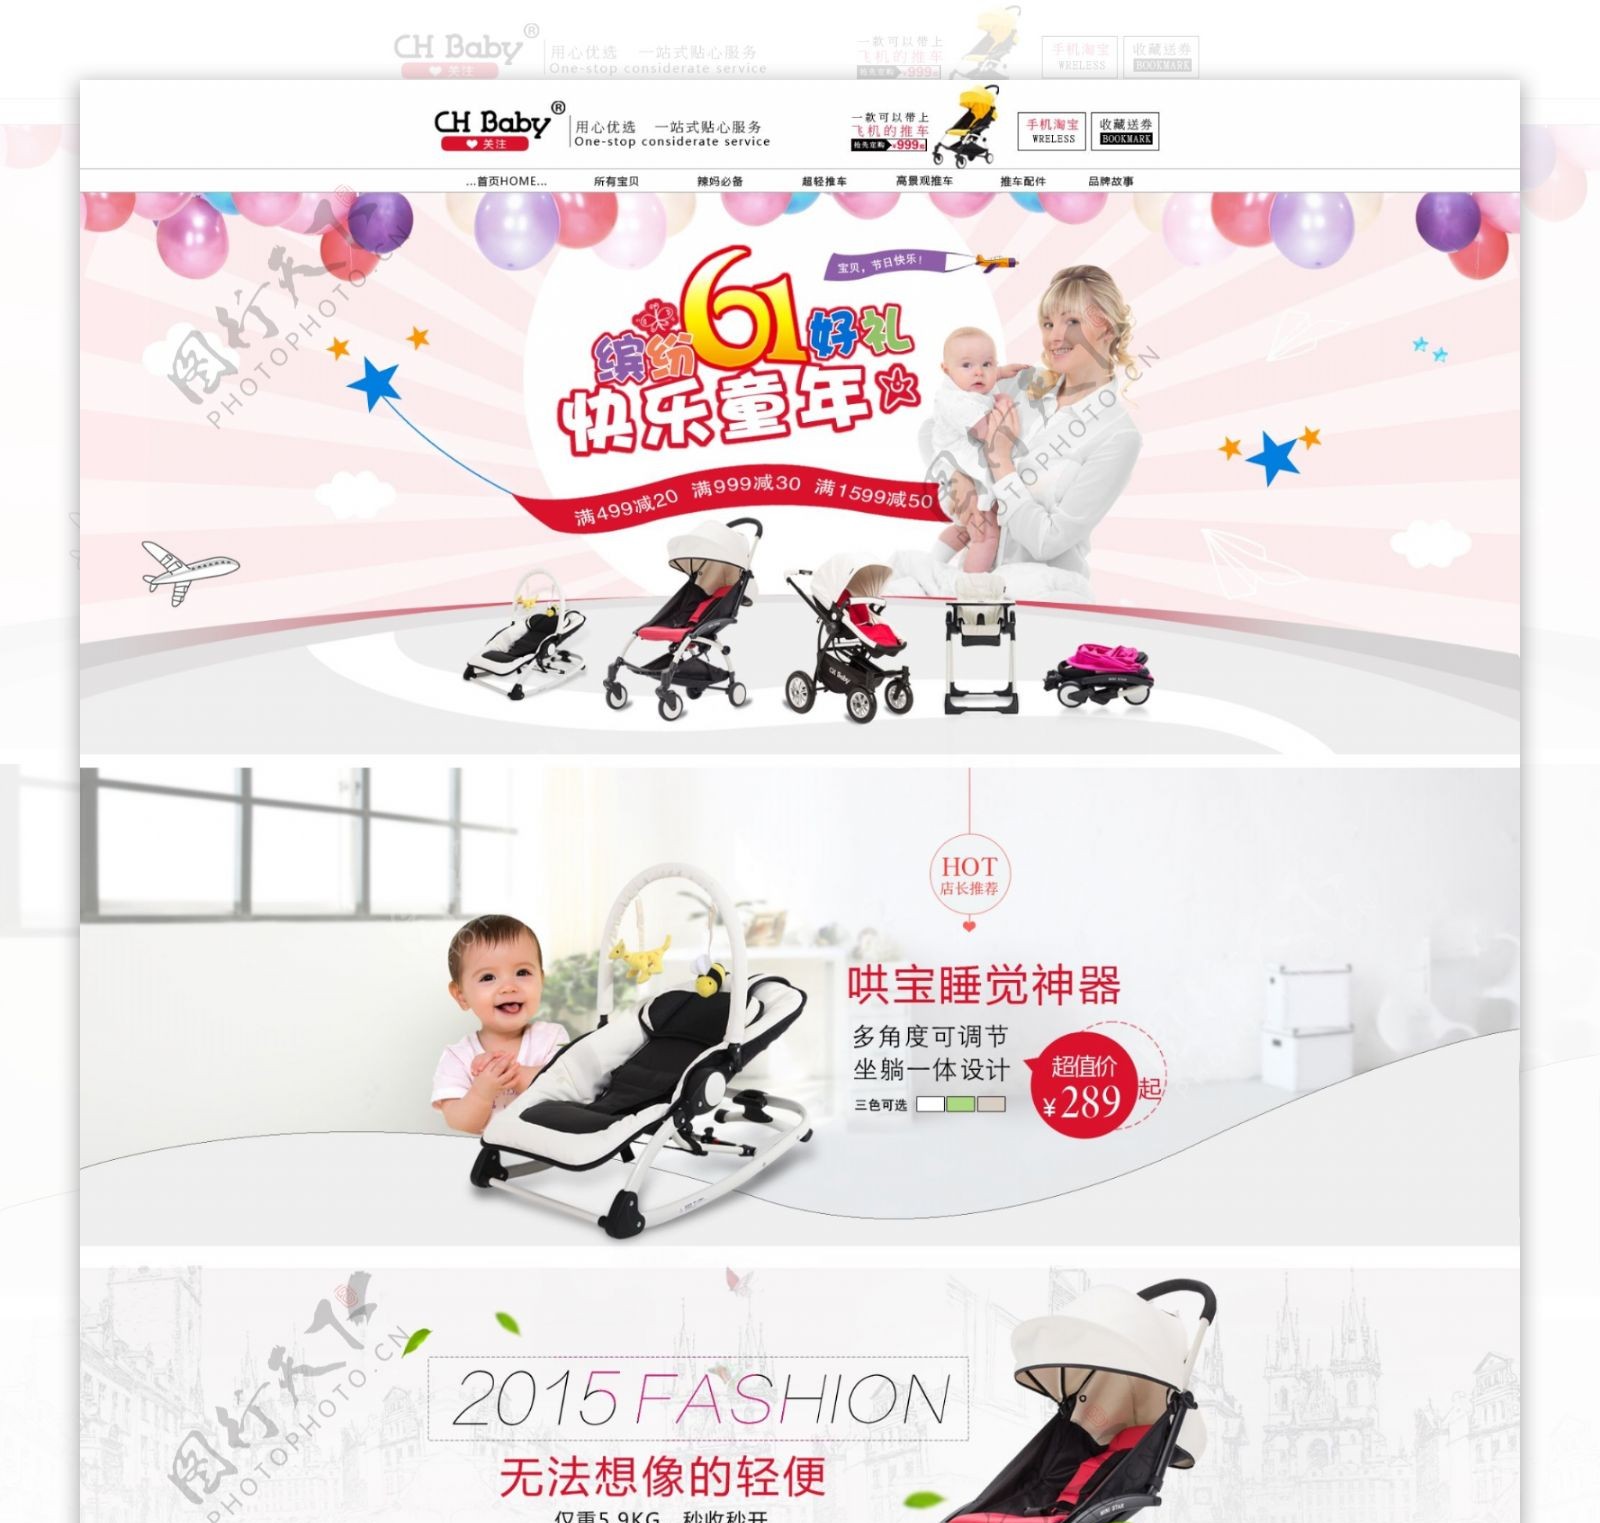 淘宝61小推车促销页面设计PSD素材